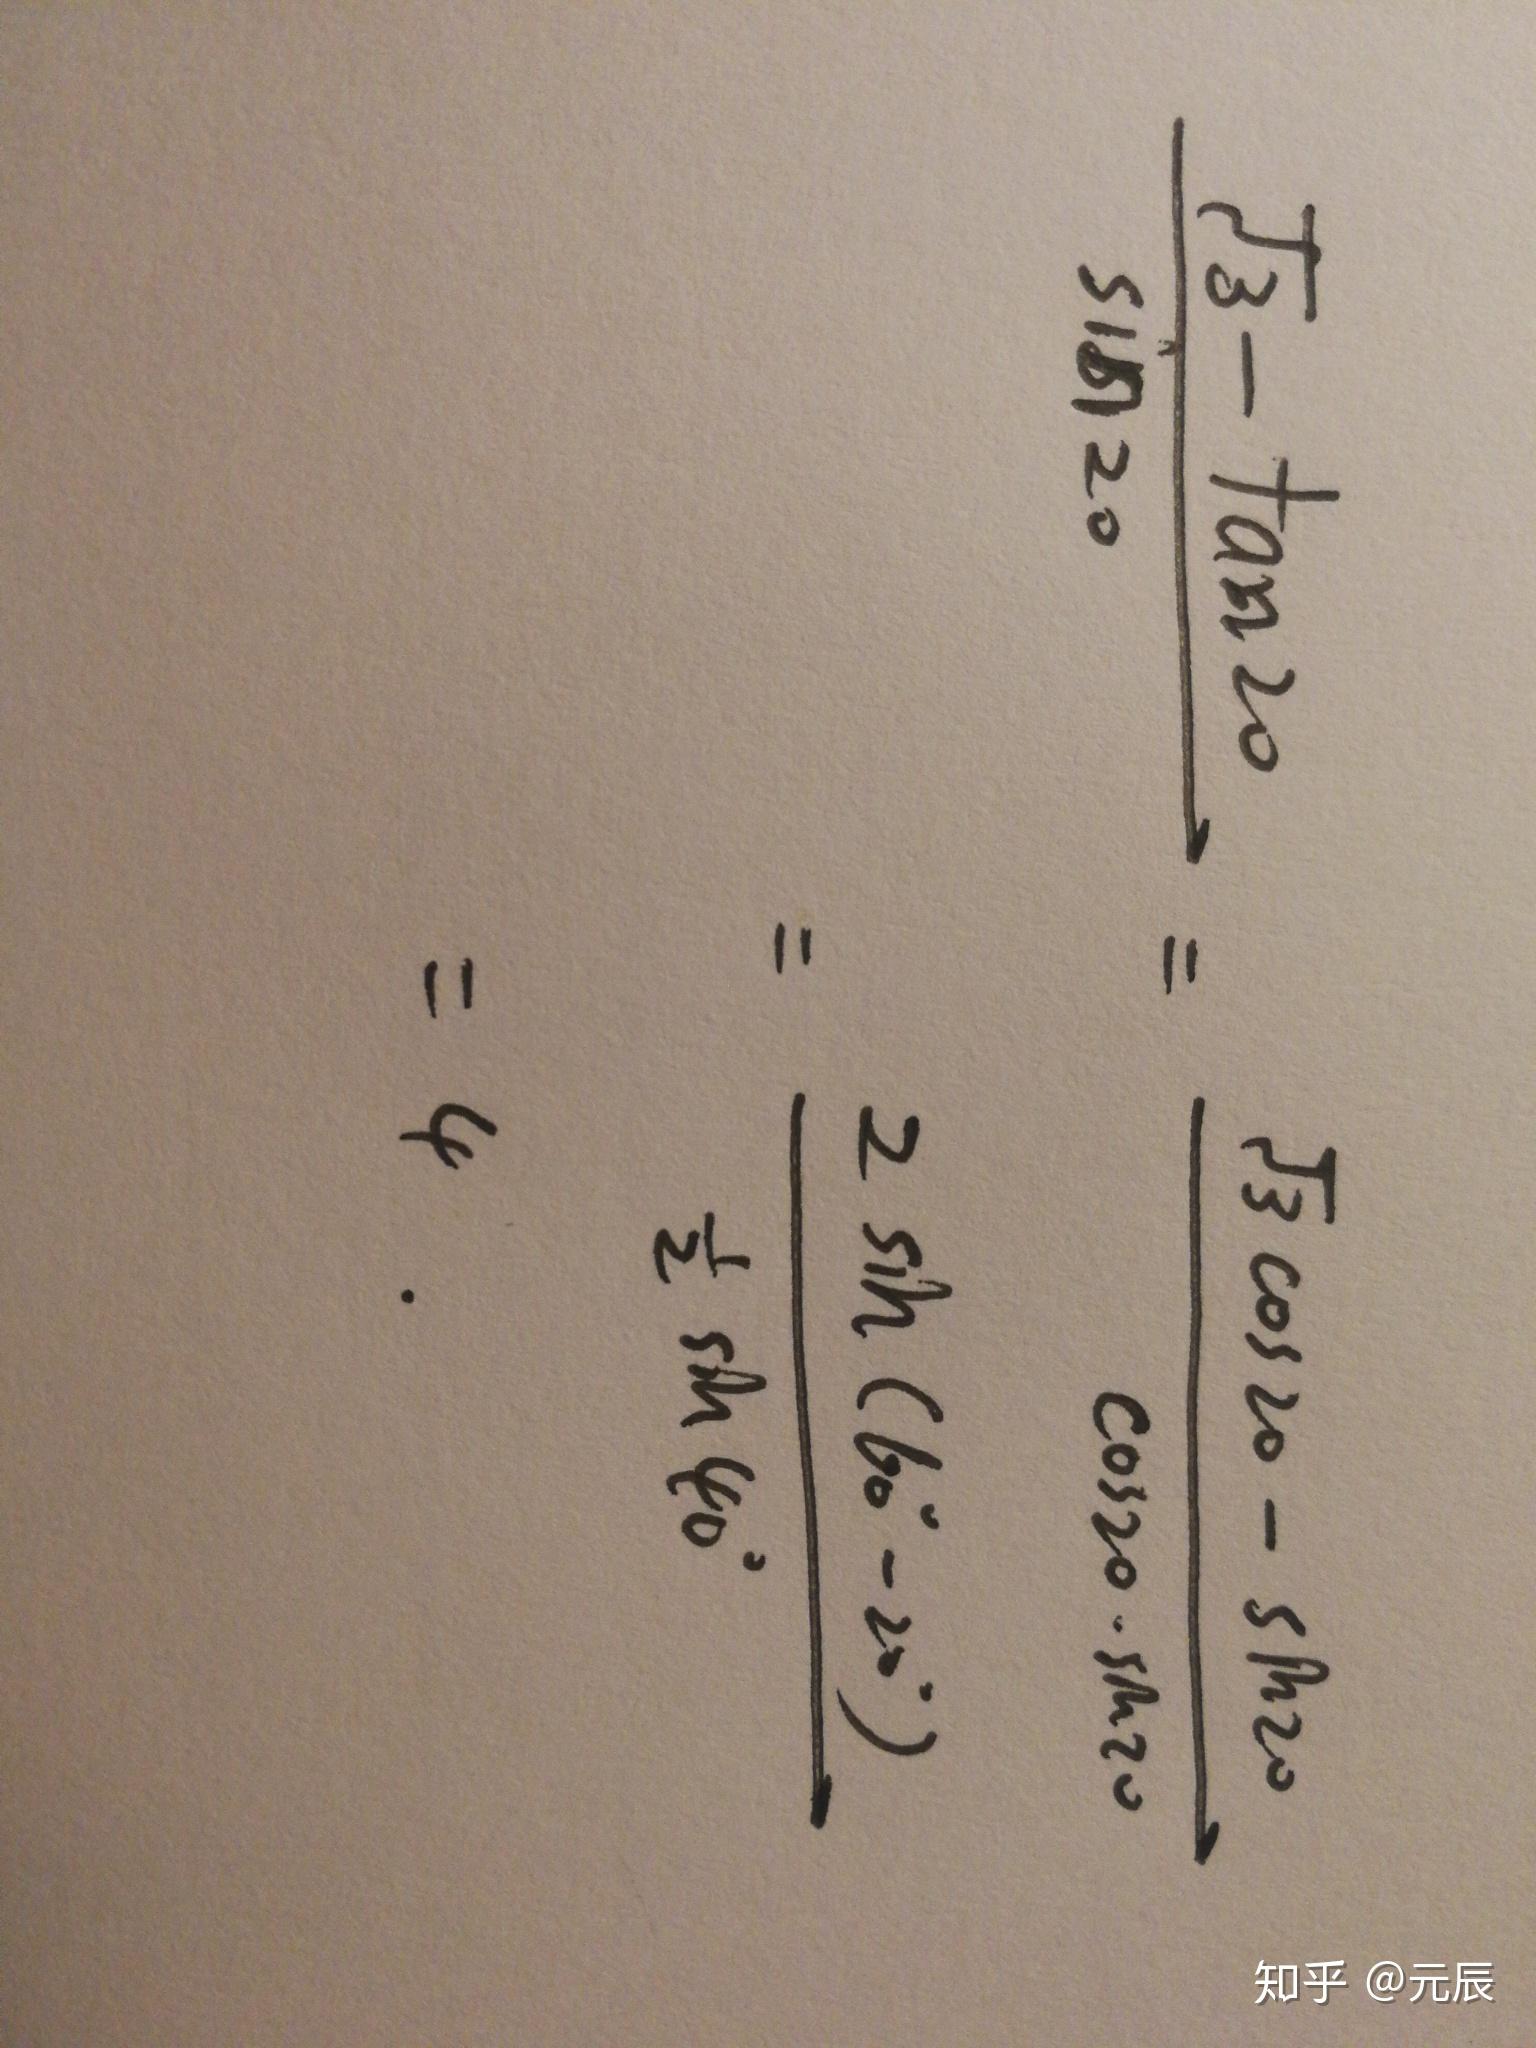 根号三减去tan20度除以sin20度等于多少求解答过程